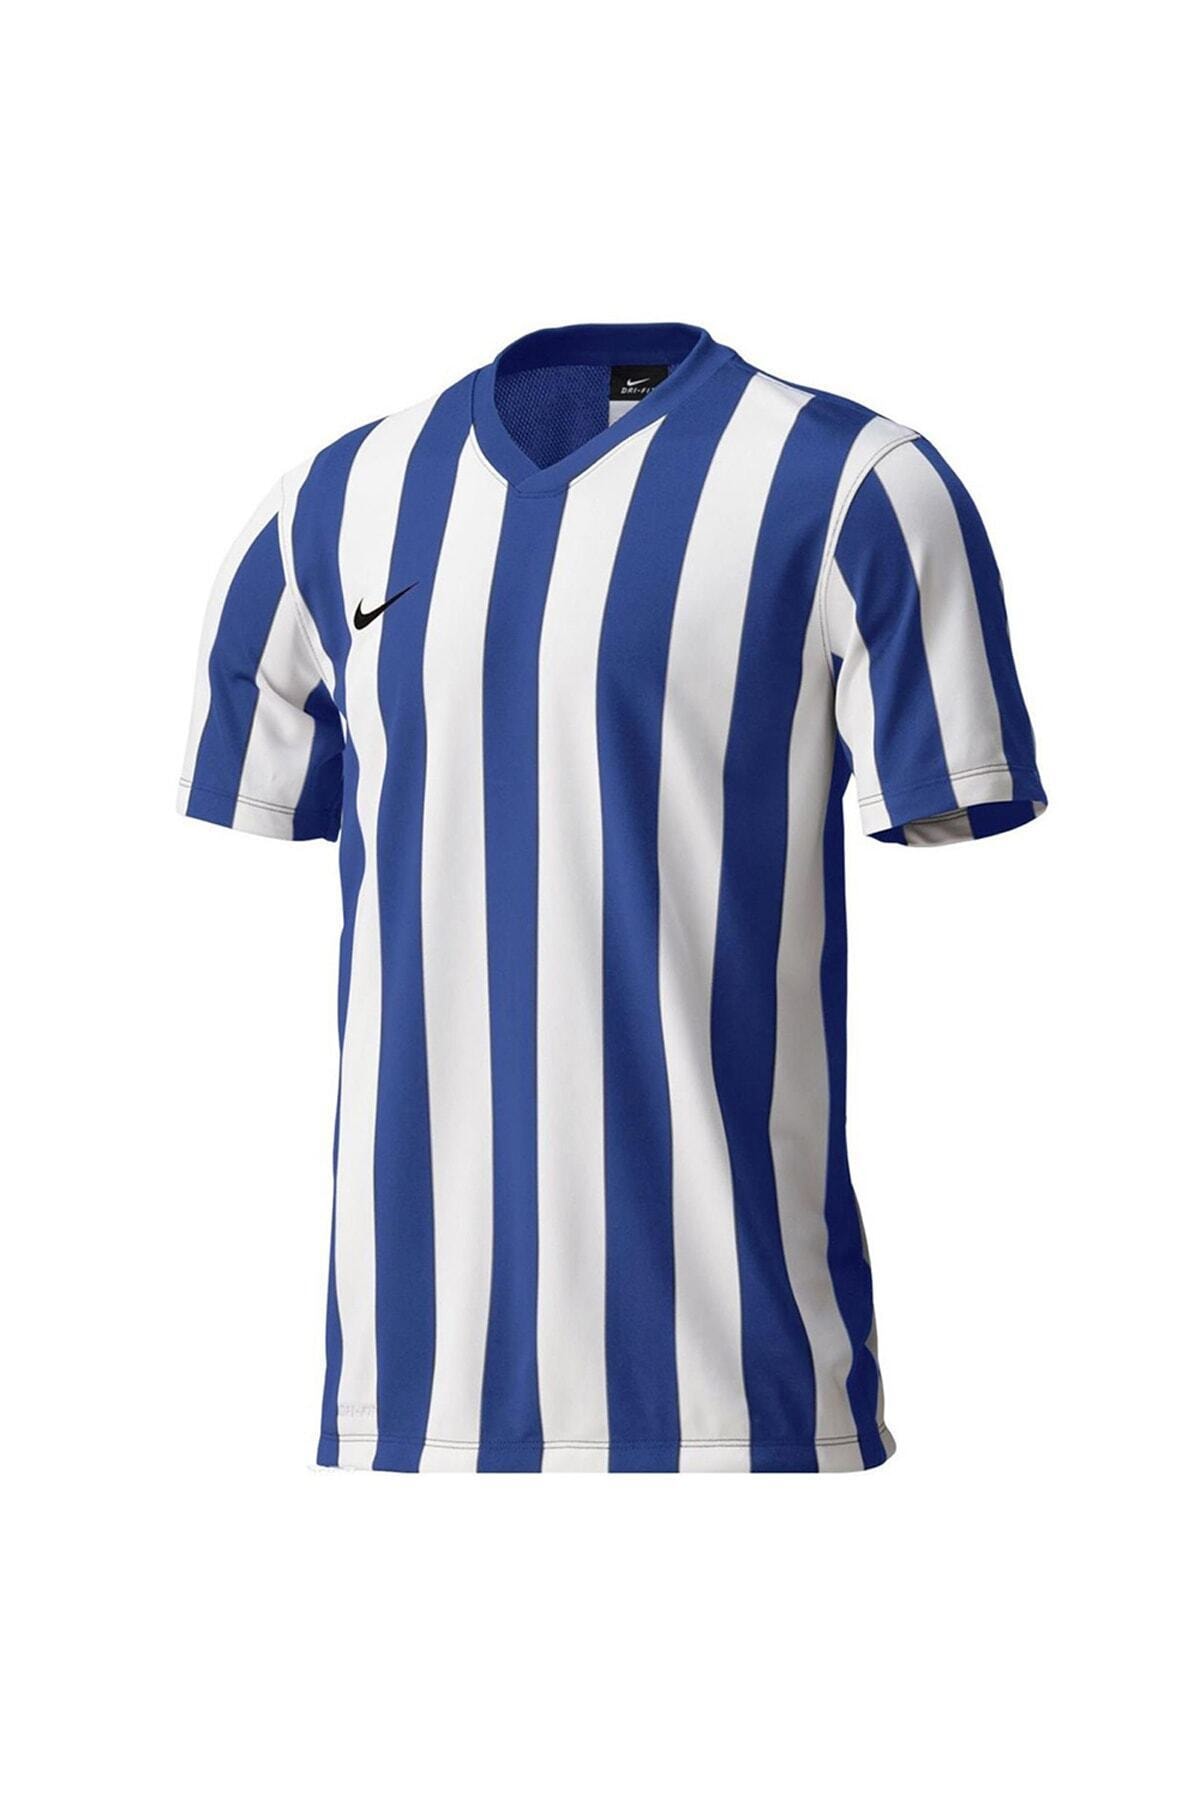 Nike 588411-463 SS Striped Division Futbol Forması